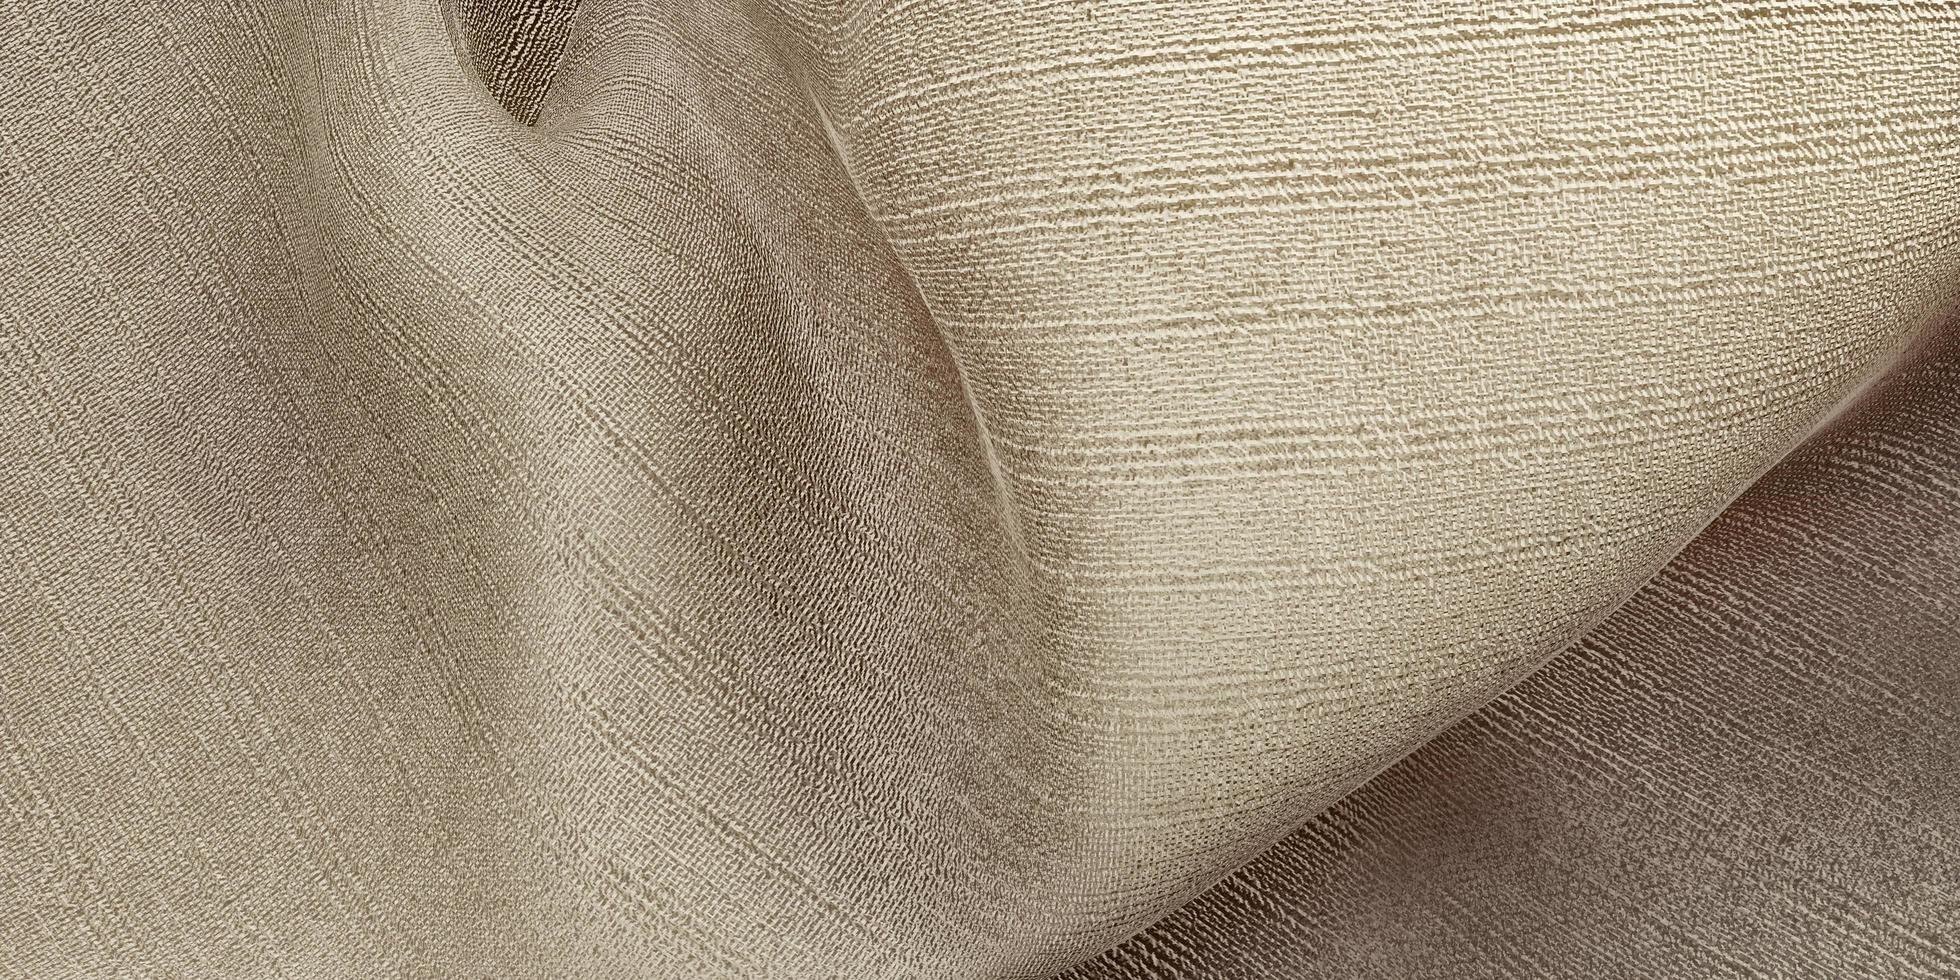 trama di seta onda tenda tessuto organza beige chiaro illustrazione 3d foto